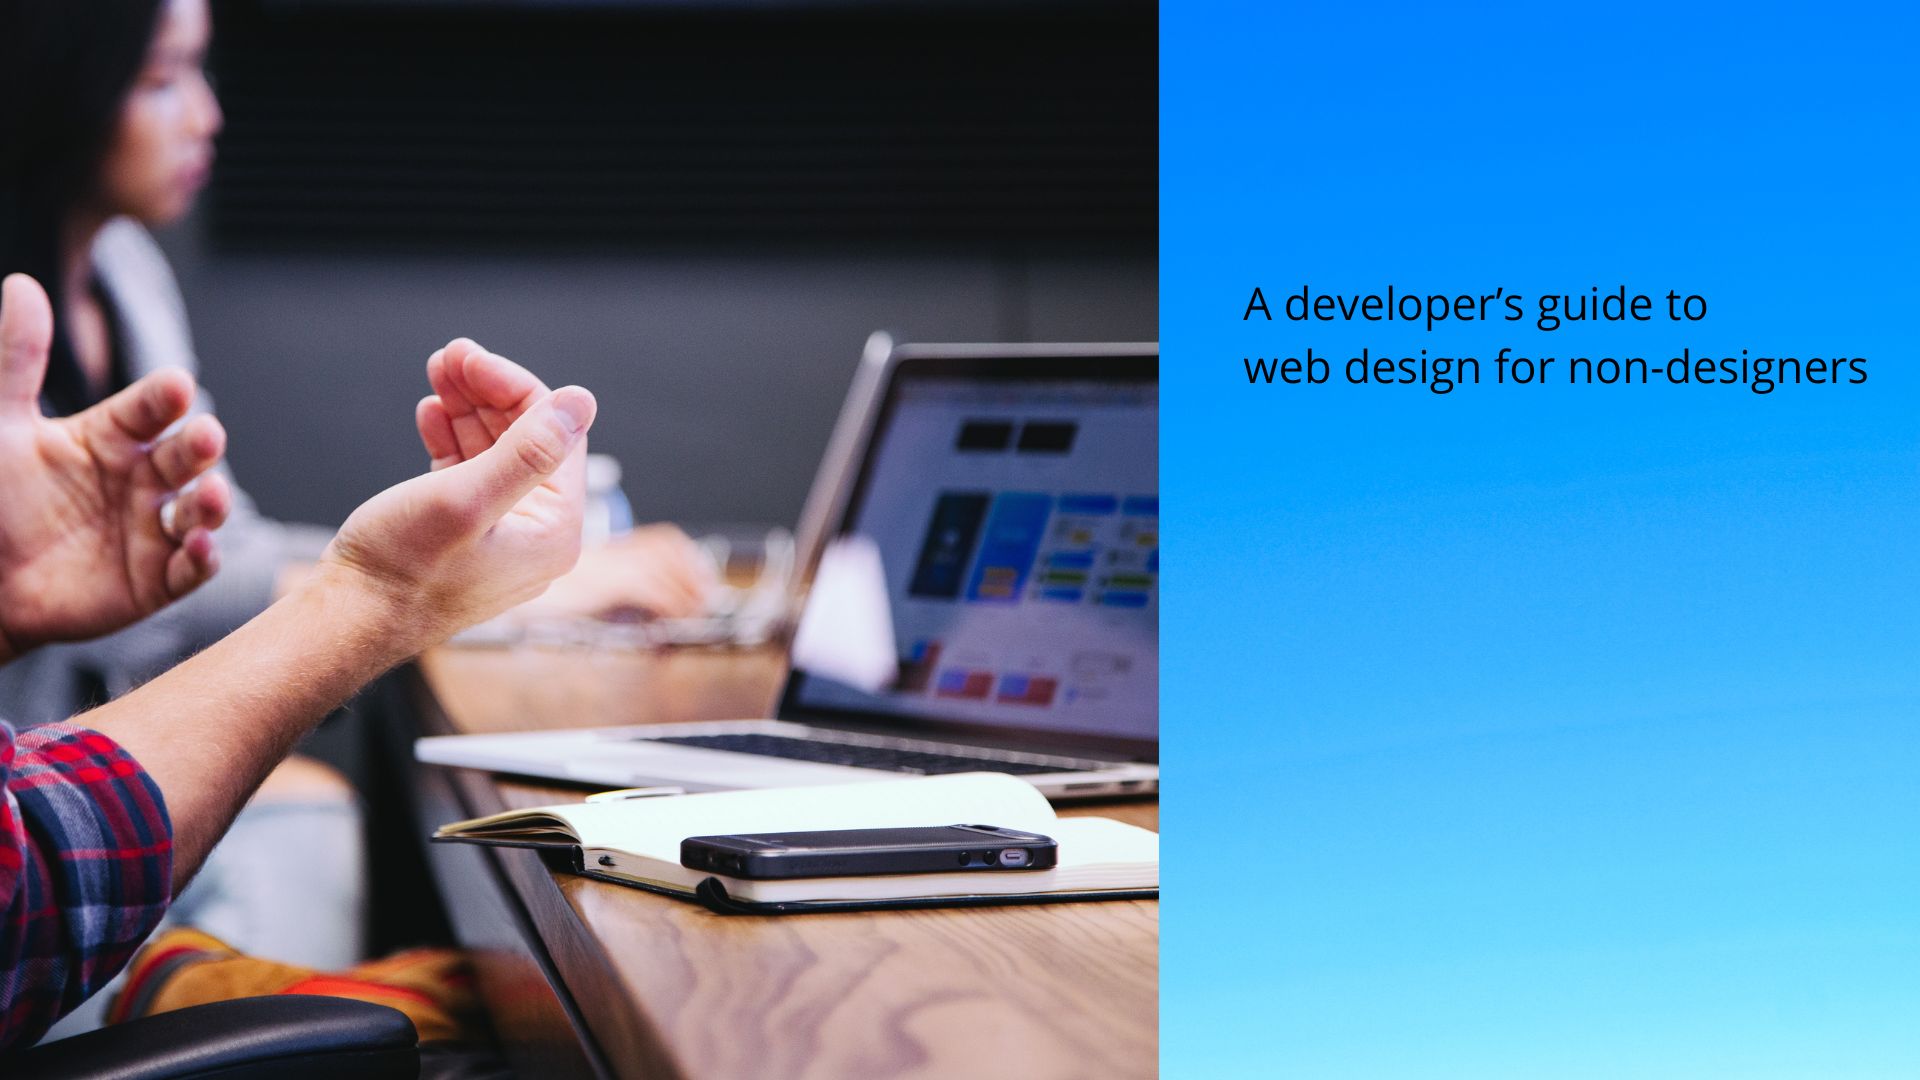 A developer’s guide to web design for non-designers